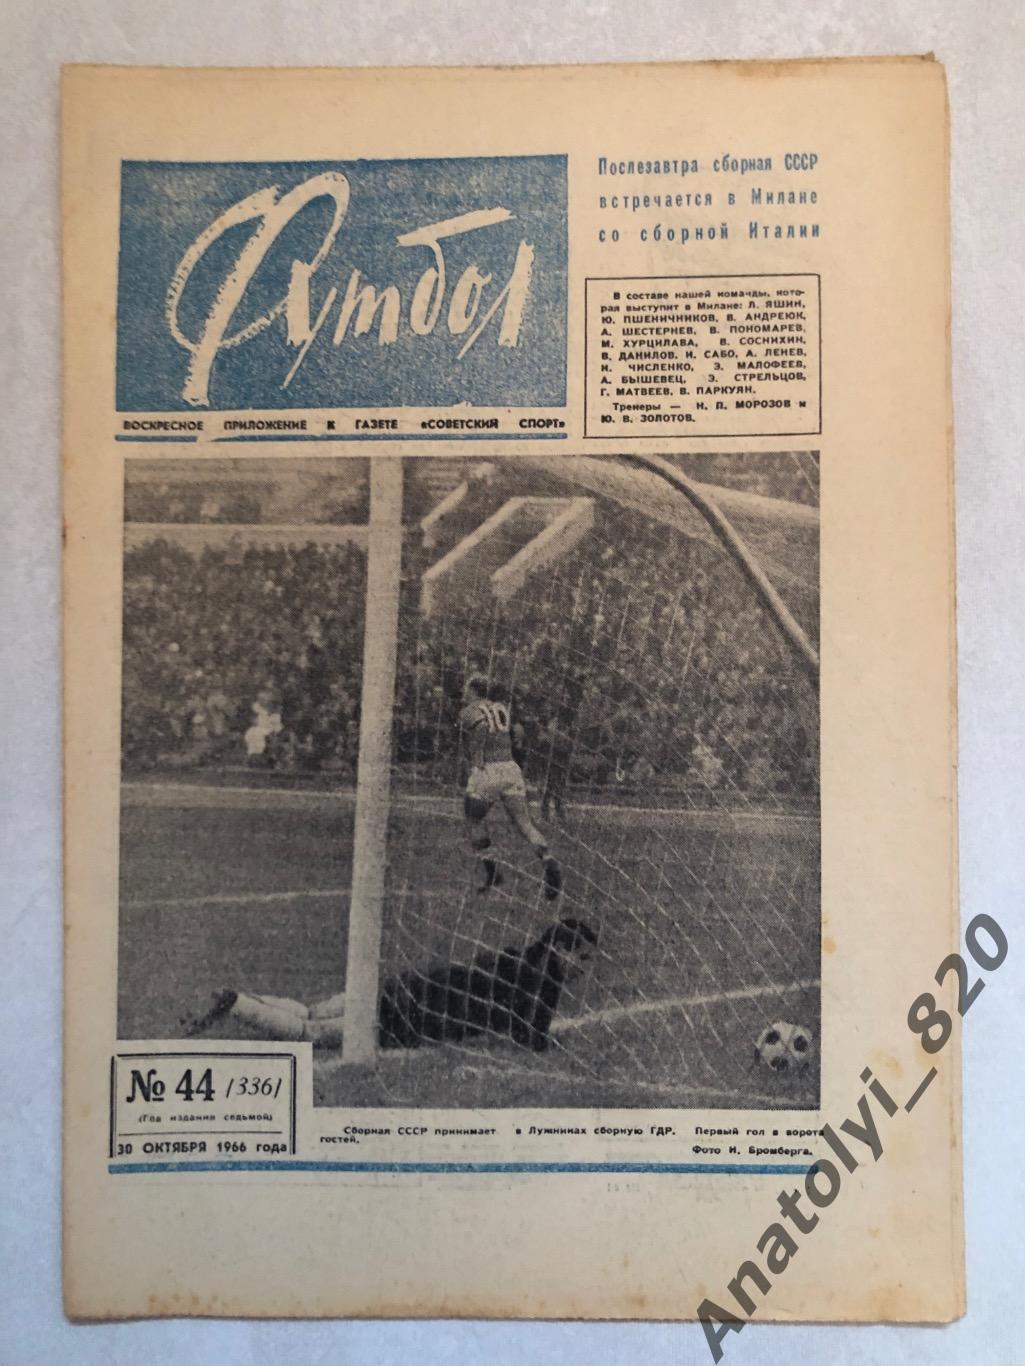 Еженедельник футбол номер 44 от 30.10.1966